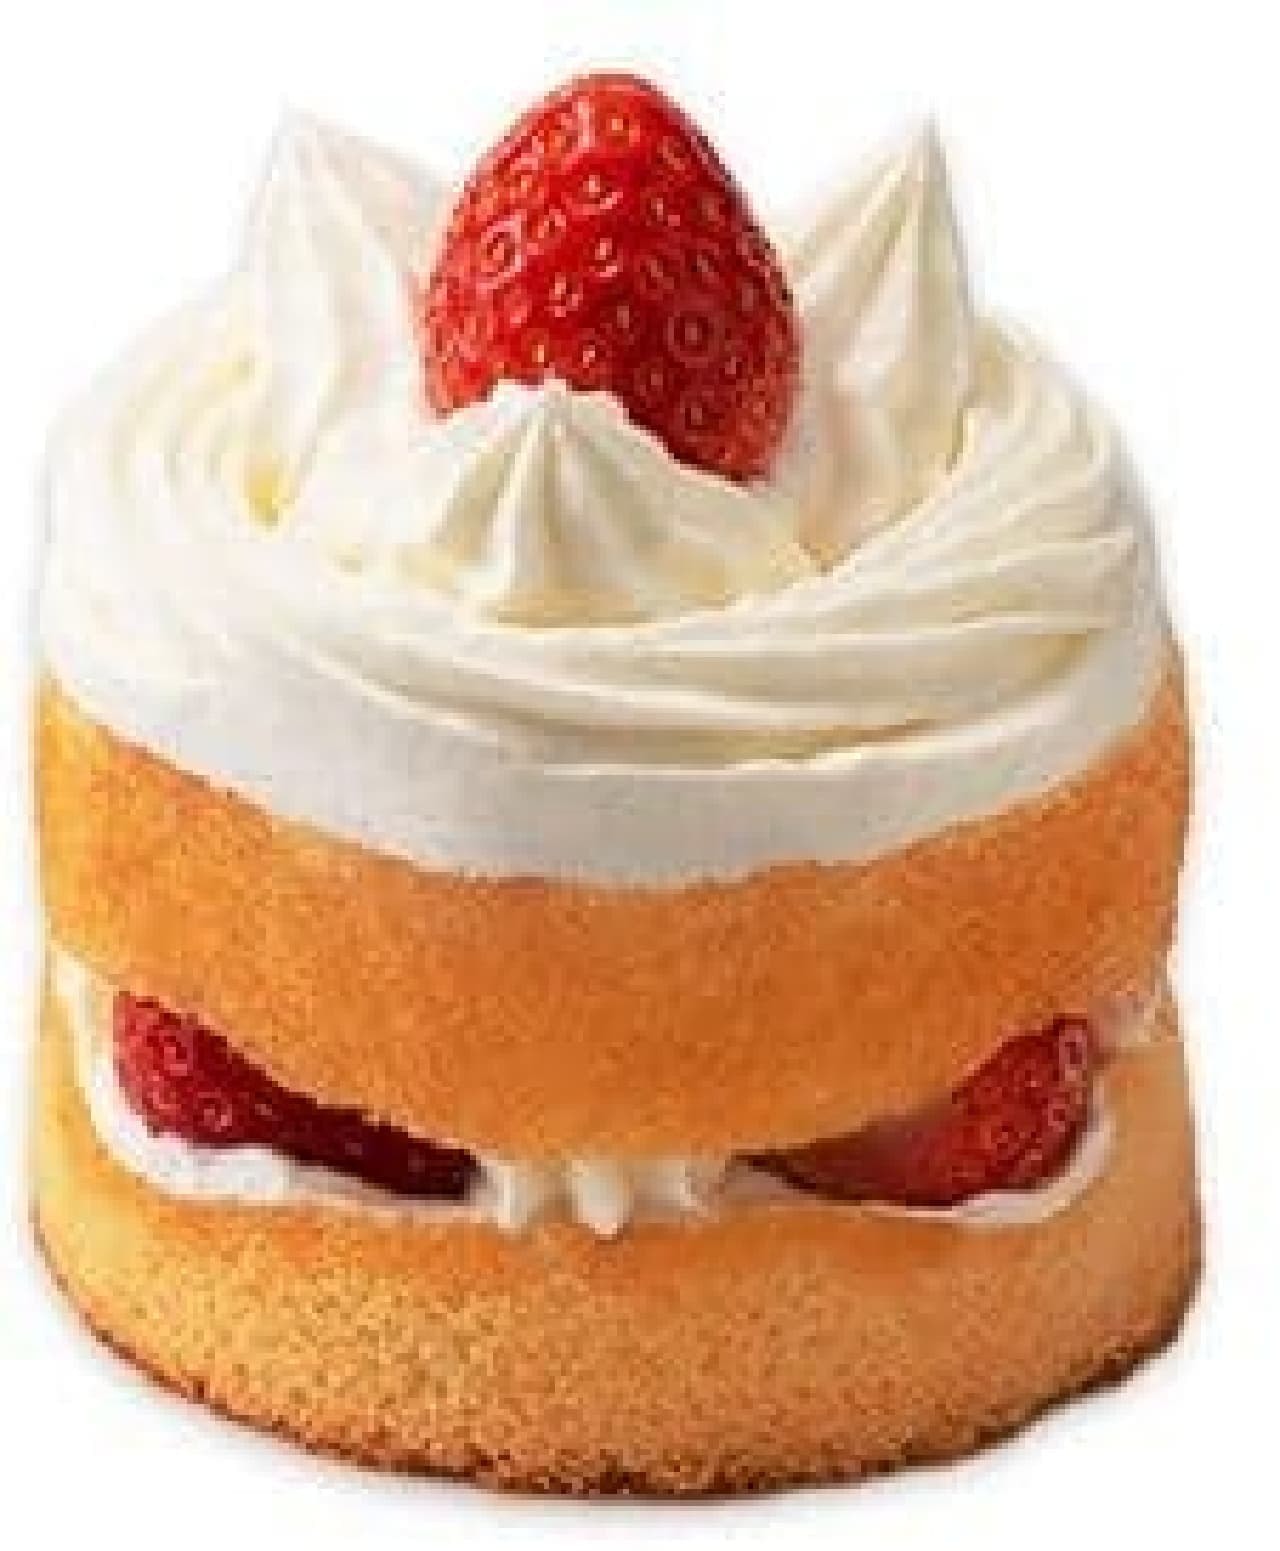 Taste of Tradition: Fujiya's Shortcake